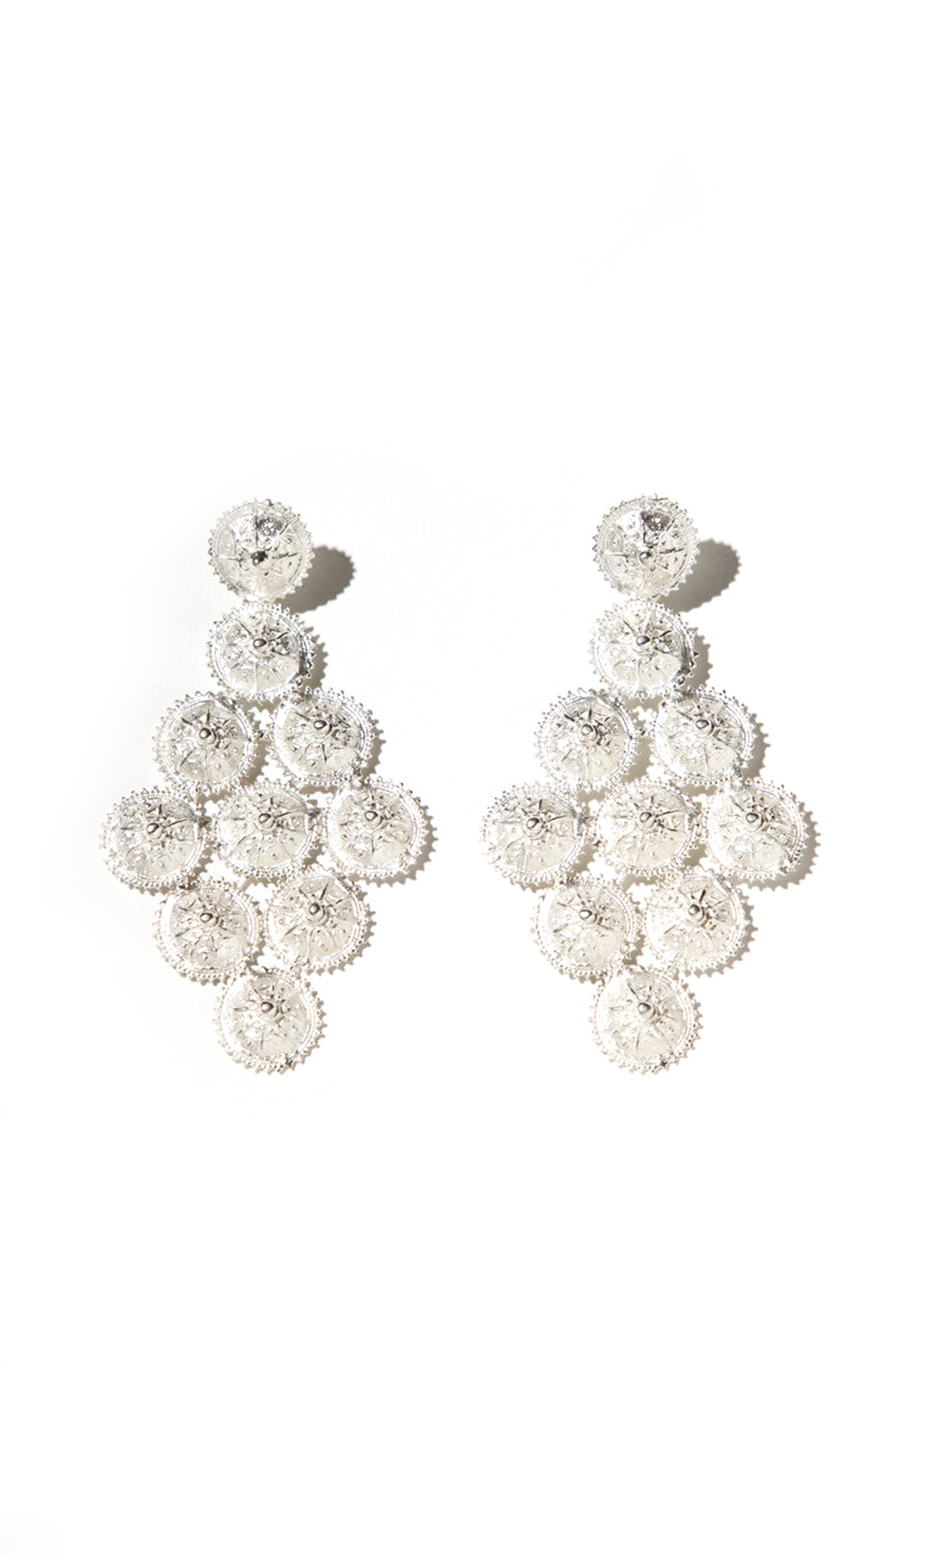 silver statement earrings